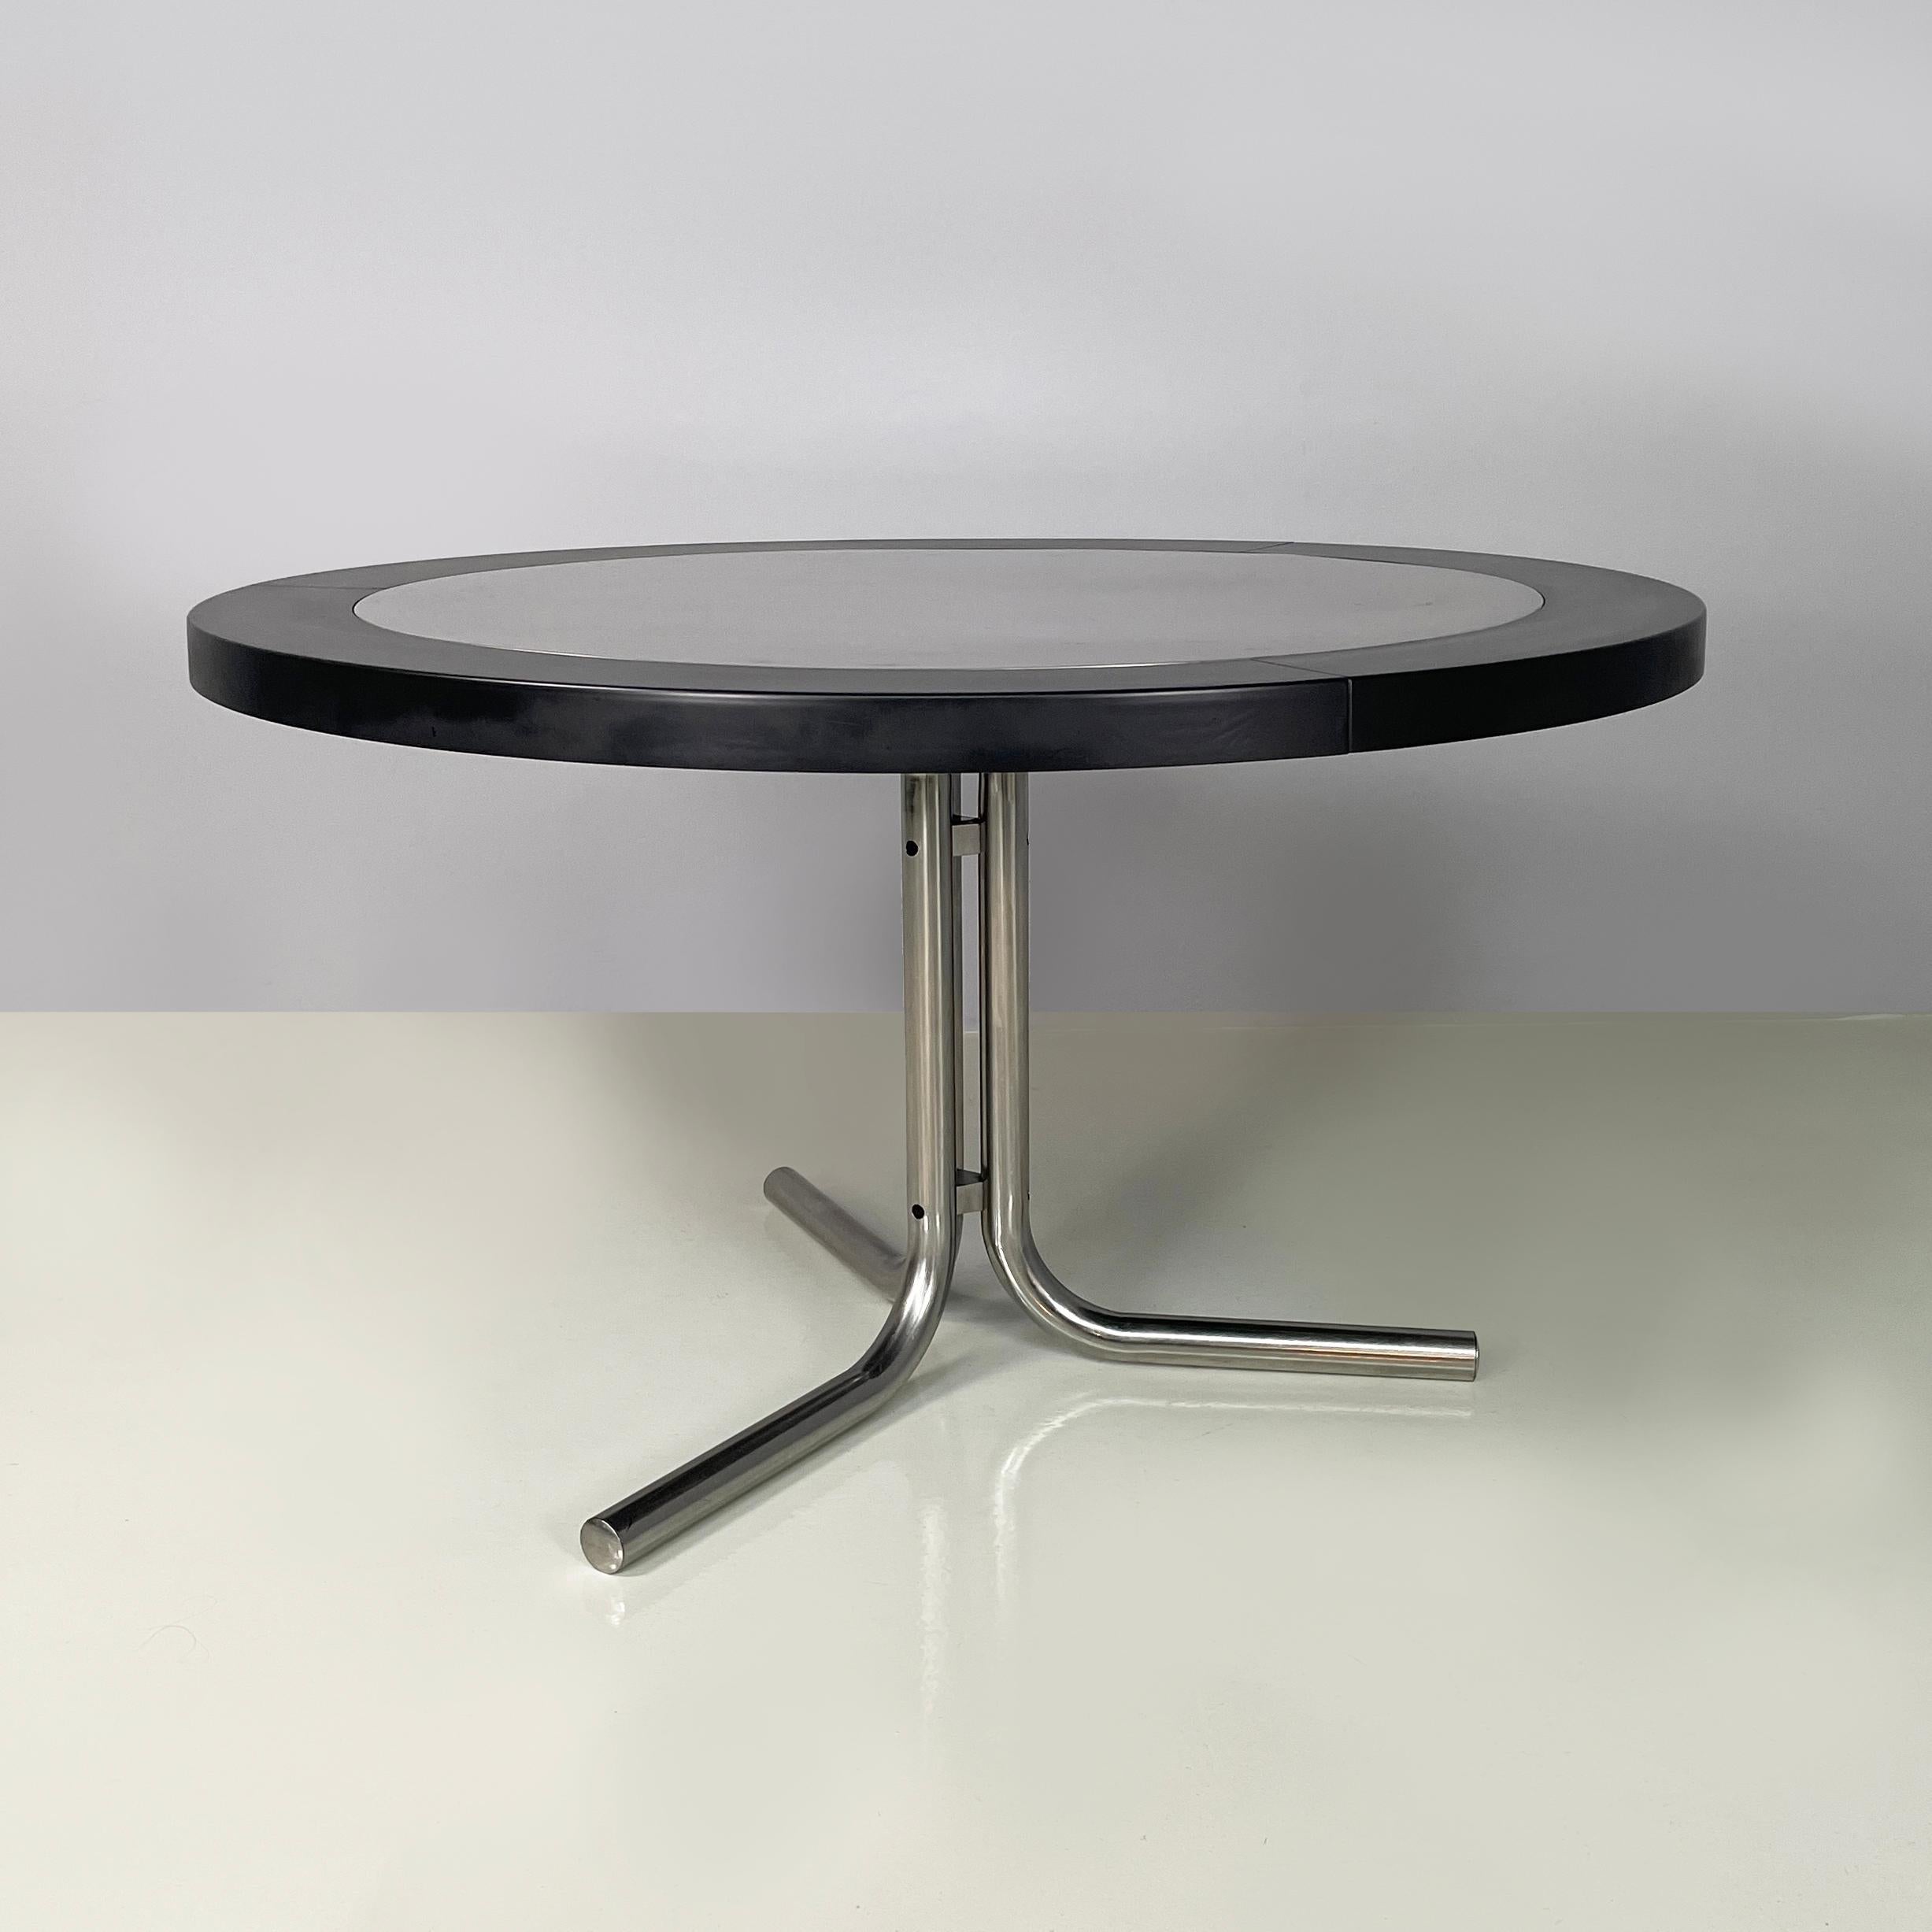 Moderner italienischer moderner Esstisch Desco  Achille Castiglioni für Zanotta, 1970er-Jahre
Esstisch Mod. Desco mit runder Platte aus satiniertem Stahl mit schwarzem Kunststoffprofil. Das 3-Speichen-Bein ist aus Metallrohr gefertigt.
Produziert